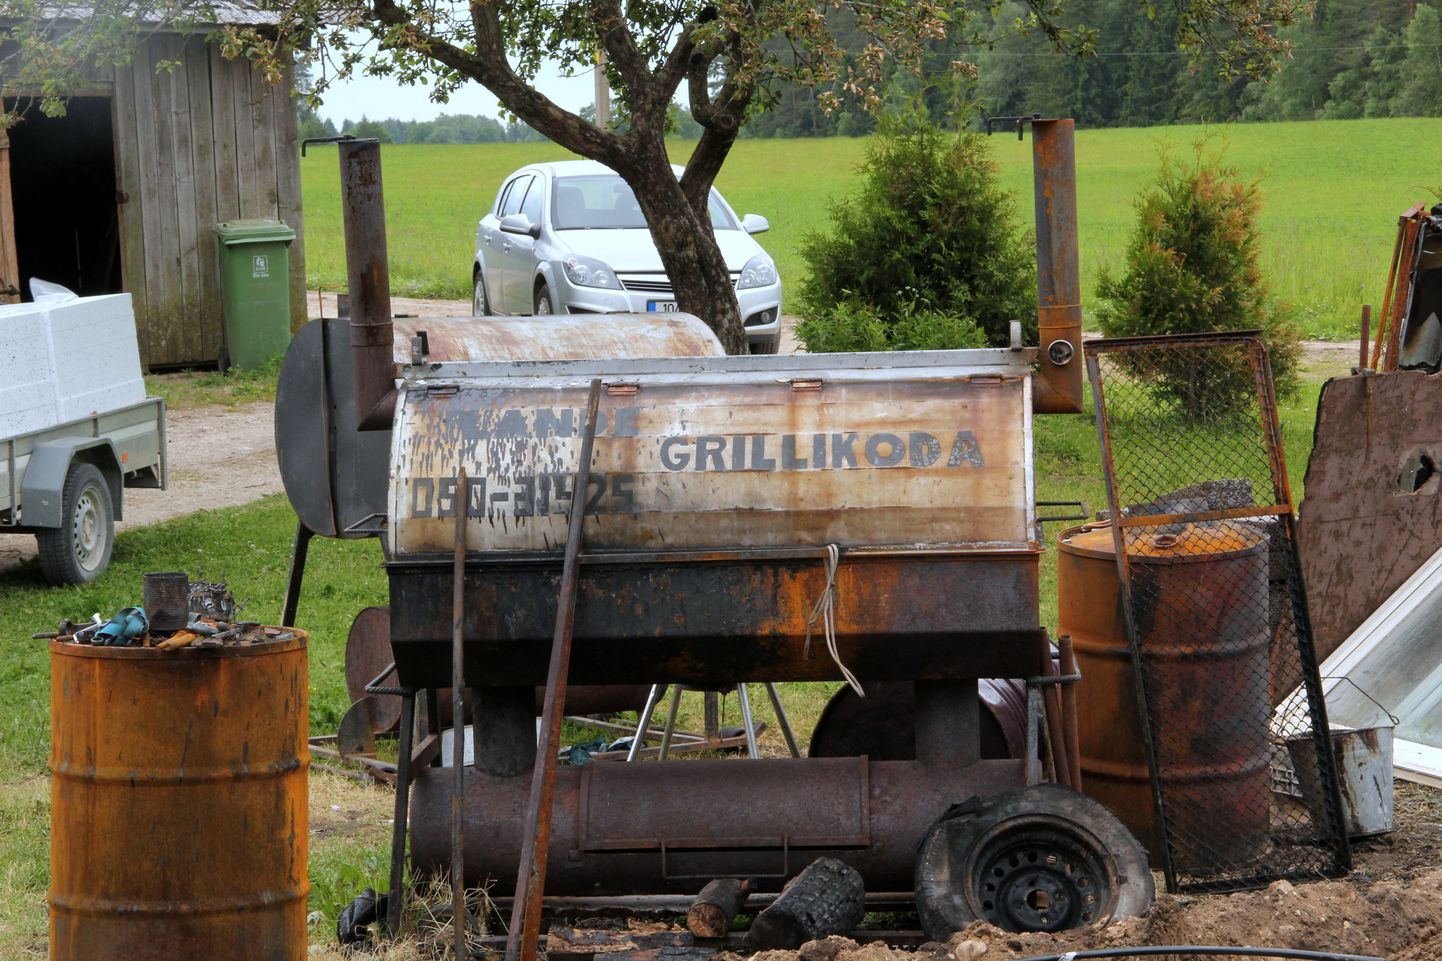 Lande talu tuntuim kaubamärk on siiani olnud grillitud liha ja barbeque-sead.